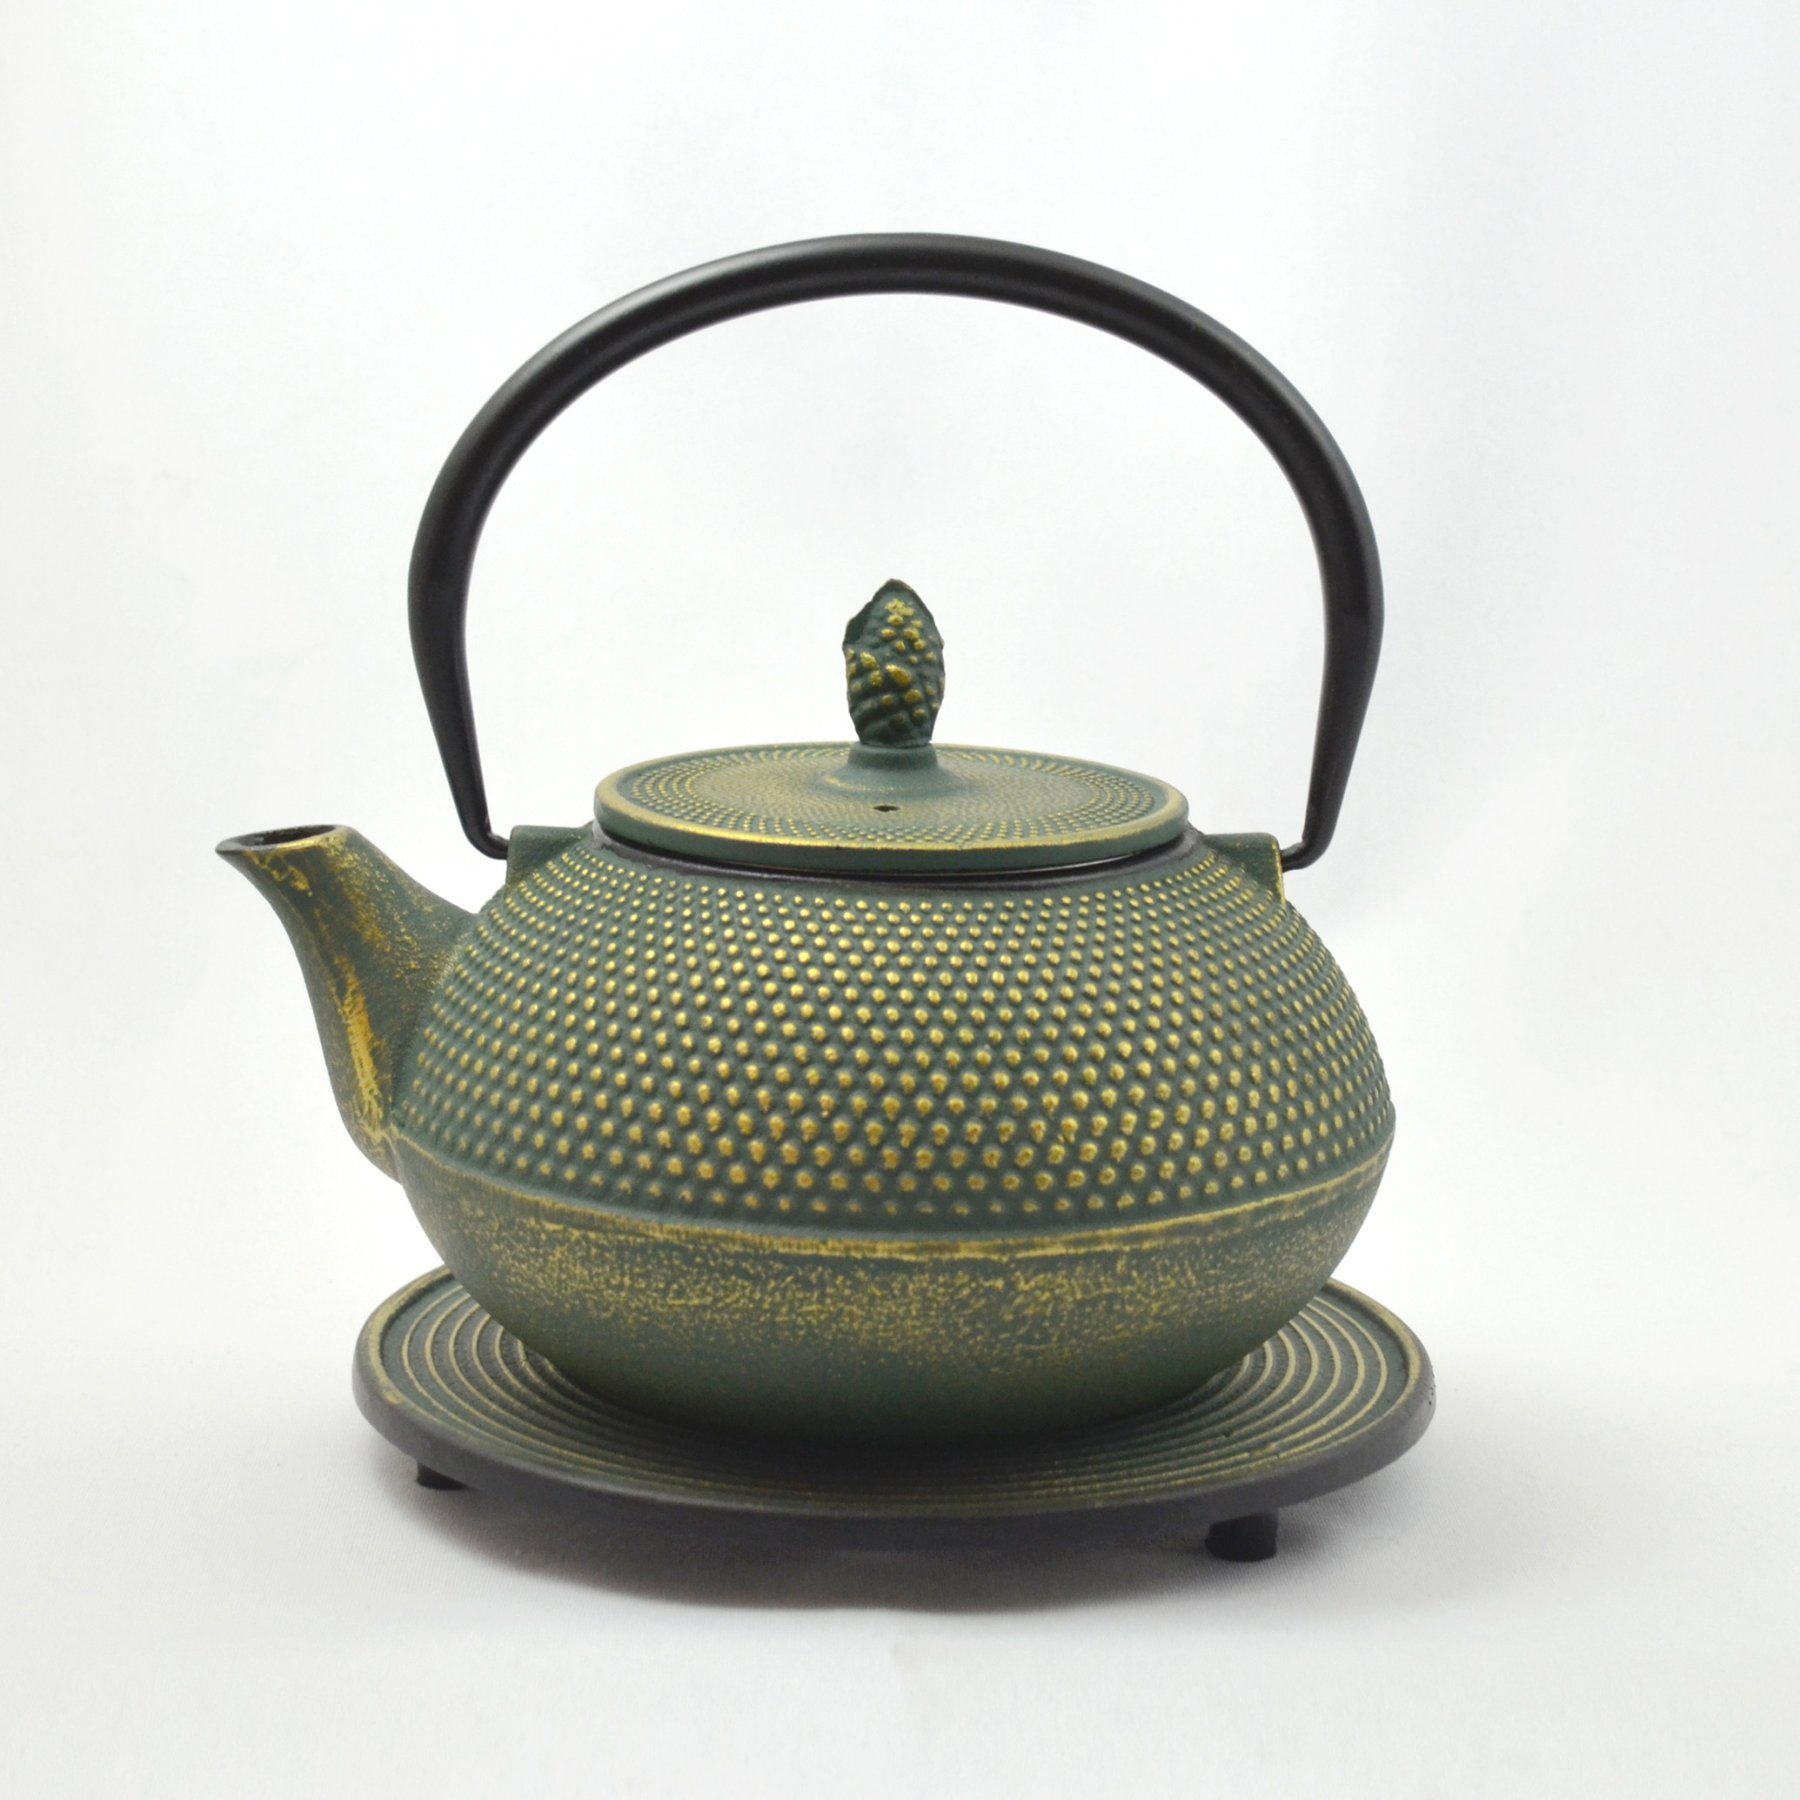 JA-UNENDLICH Teekanne Basic grün, 1.2 l, aus Gusseisen handgefertigt im Sandgussverfahren, innen emailliert Grüngold | Teekannen